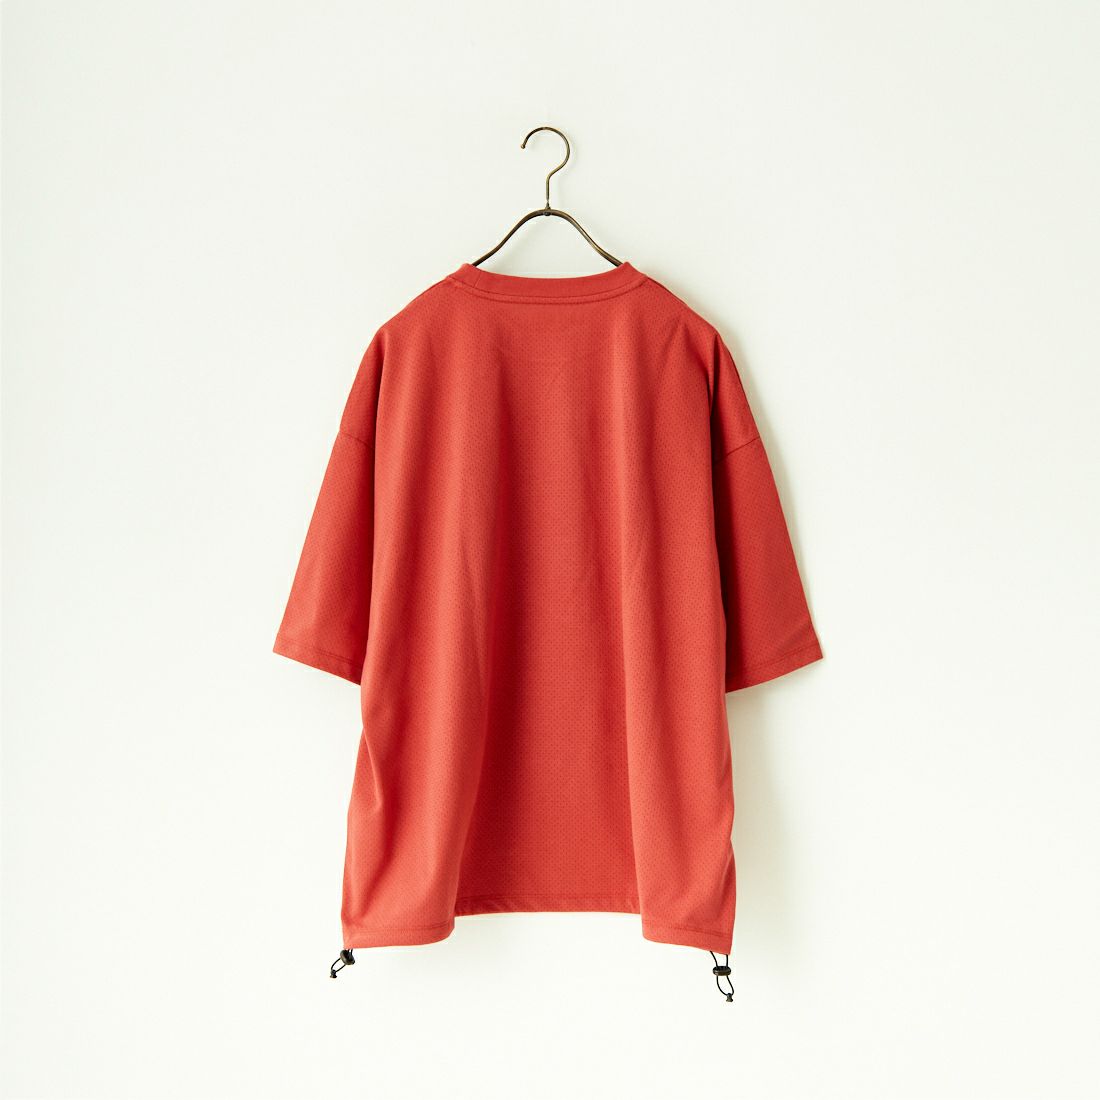 Jeans Factory Clothes [ジーンズファクトリークローズ] ドットエアリードローコードTシャツ [JFC-242-016] RED